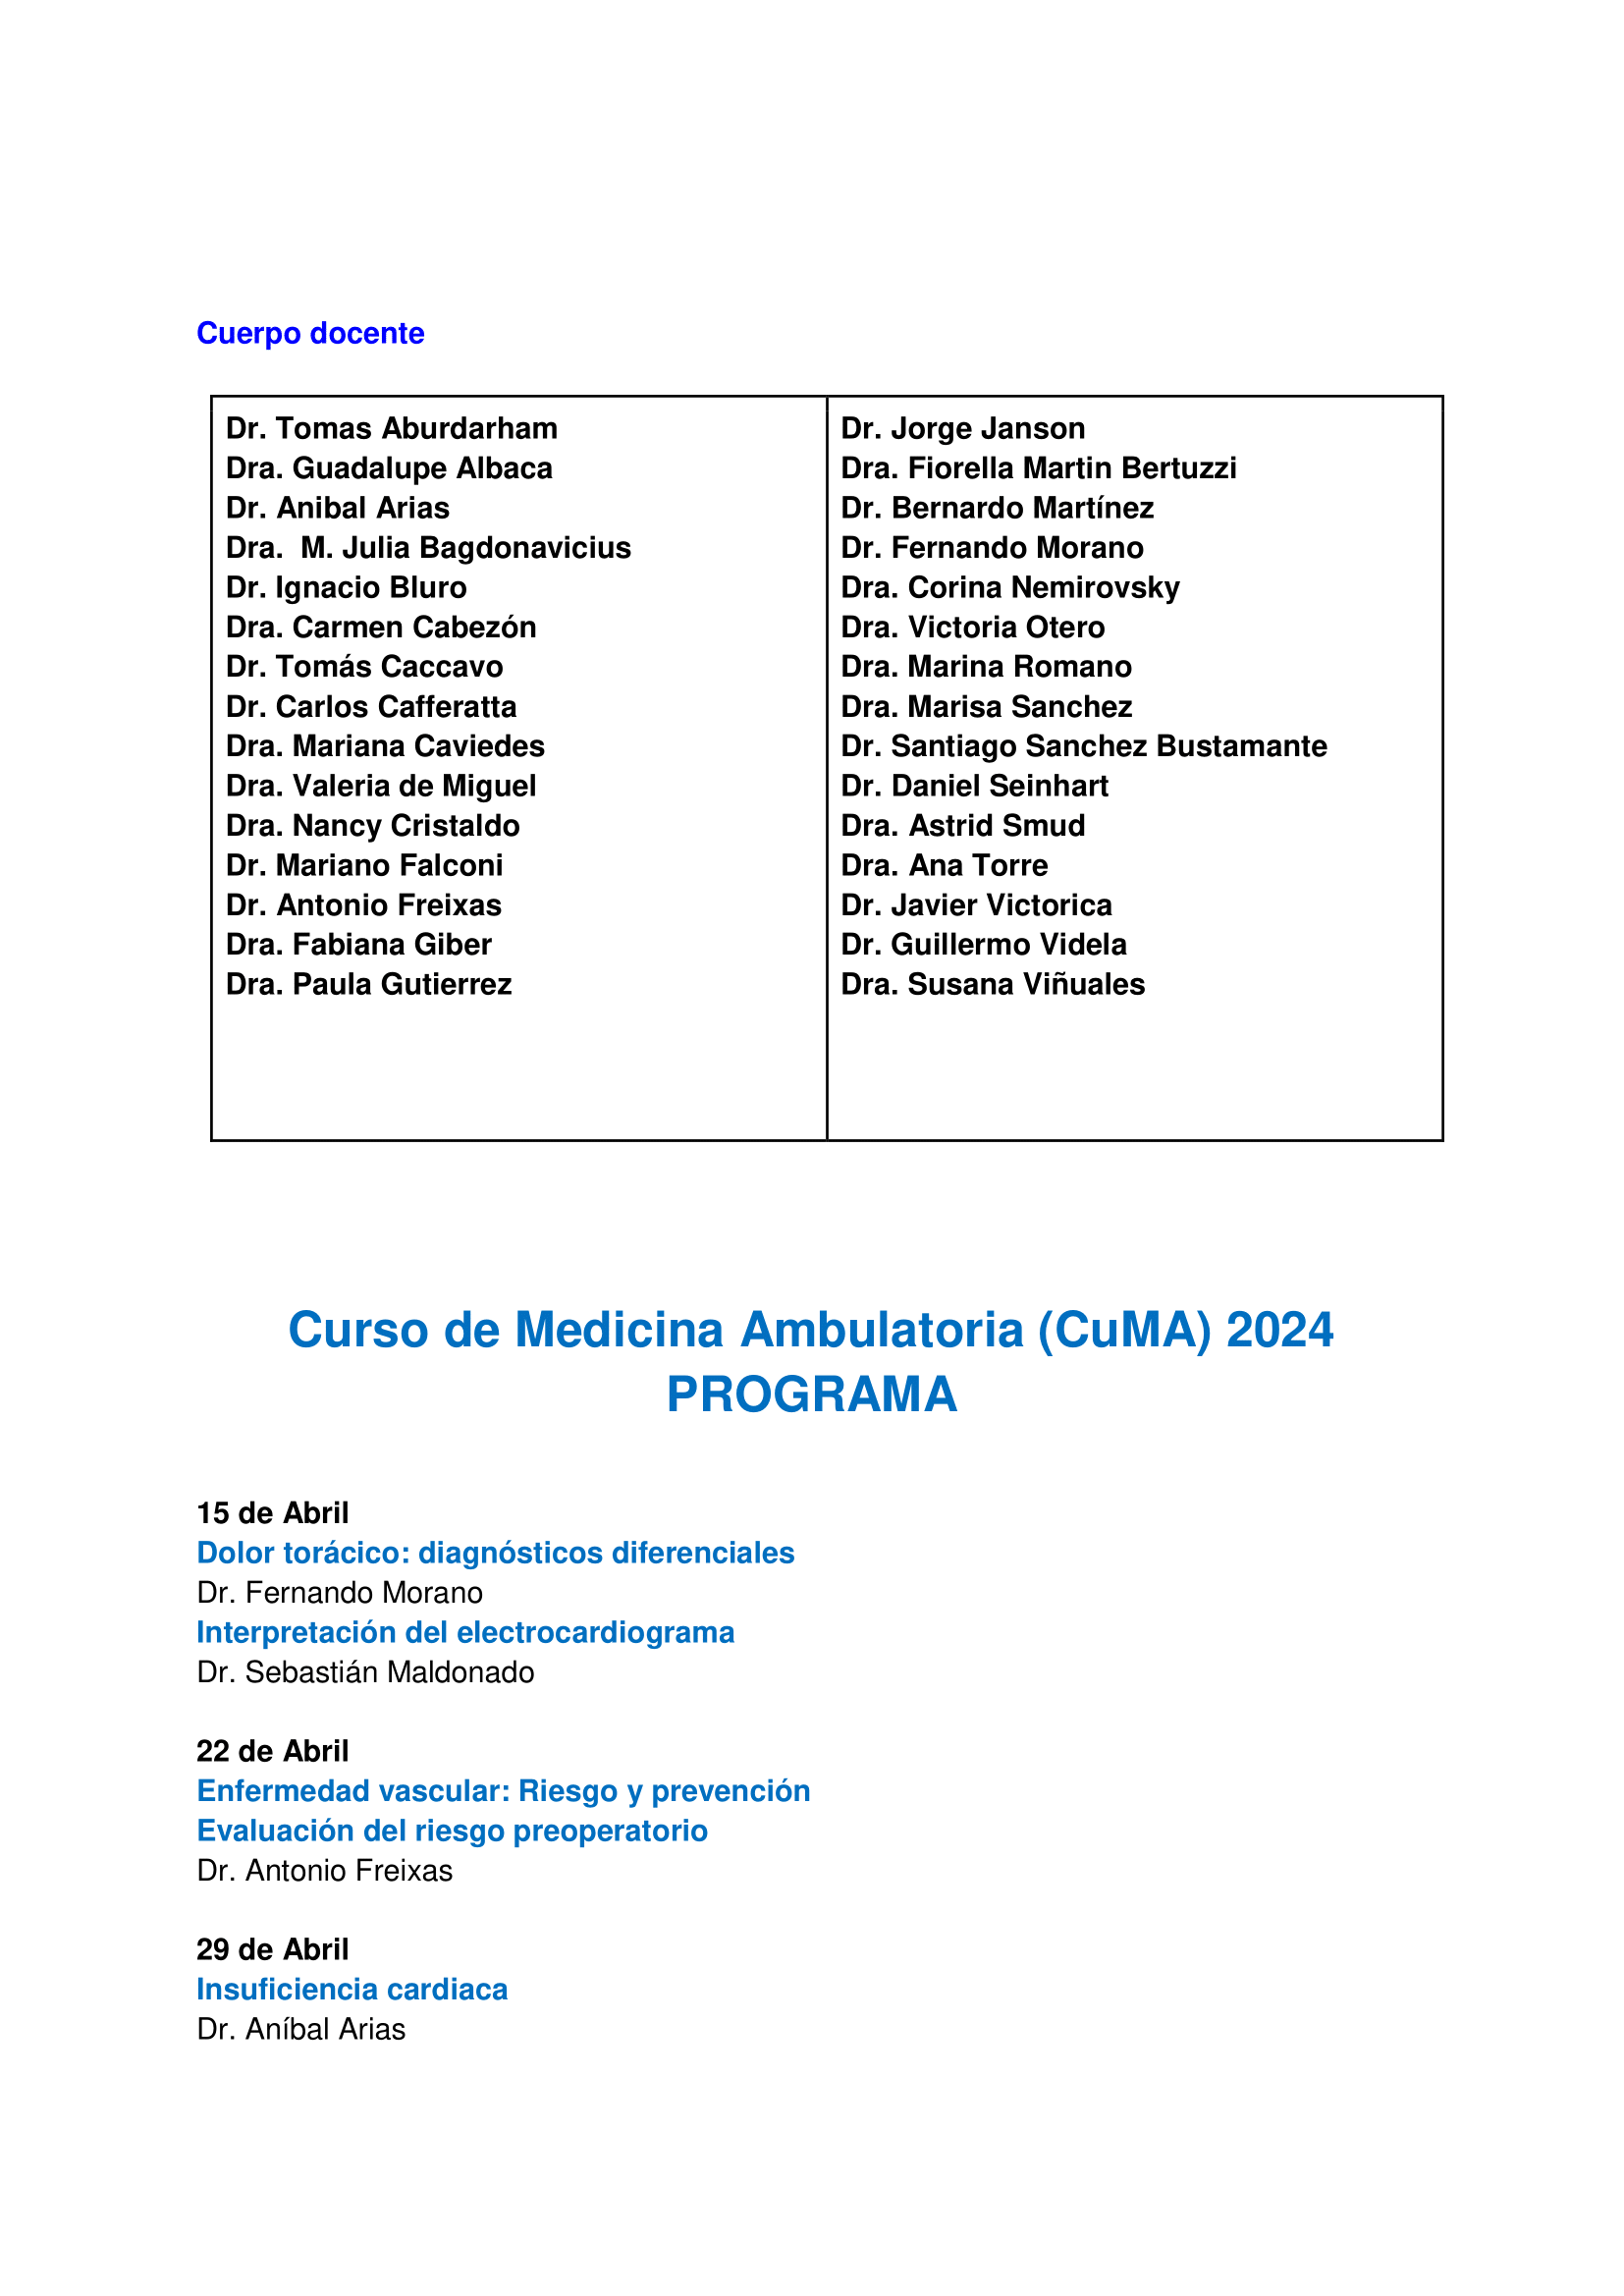 CUMA 2024 INFO y programa-3